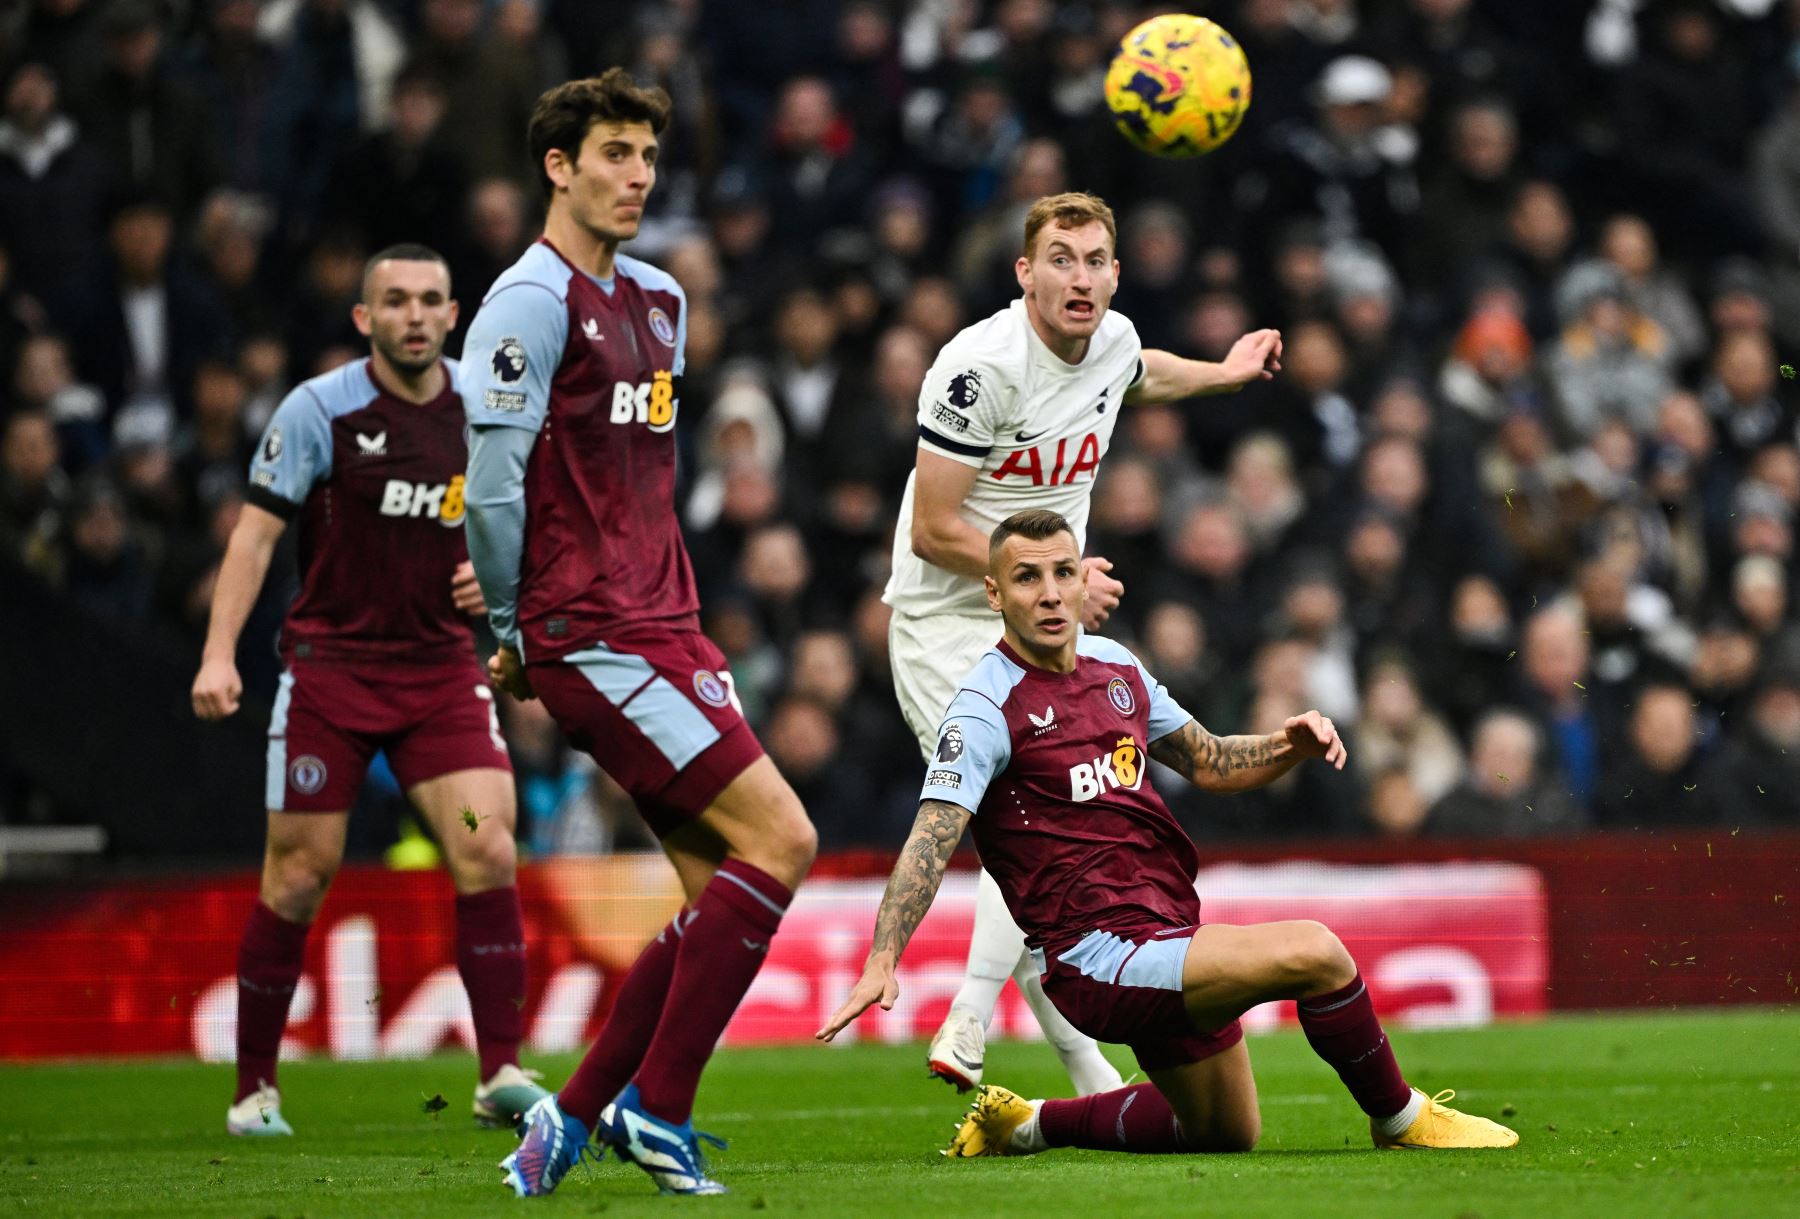 El centrocampista sueco del Tottenham Hotspur, Dejan Kulusevski , mira el balón después de dispararlo para intentar anotar durante el partido de fútbol de la Premier League inglesa entre Tottenham Hotspur y Aston Villa en el estadio Tottenham Hotspur de Londres.
Foto: AFP